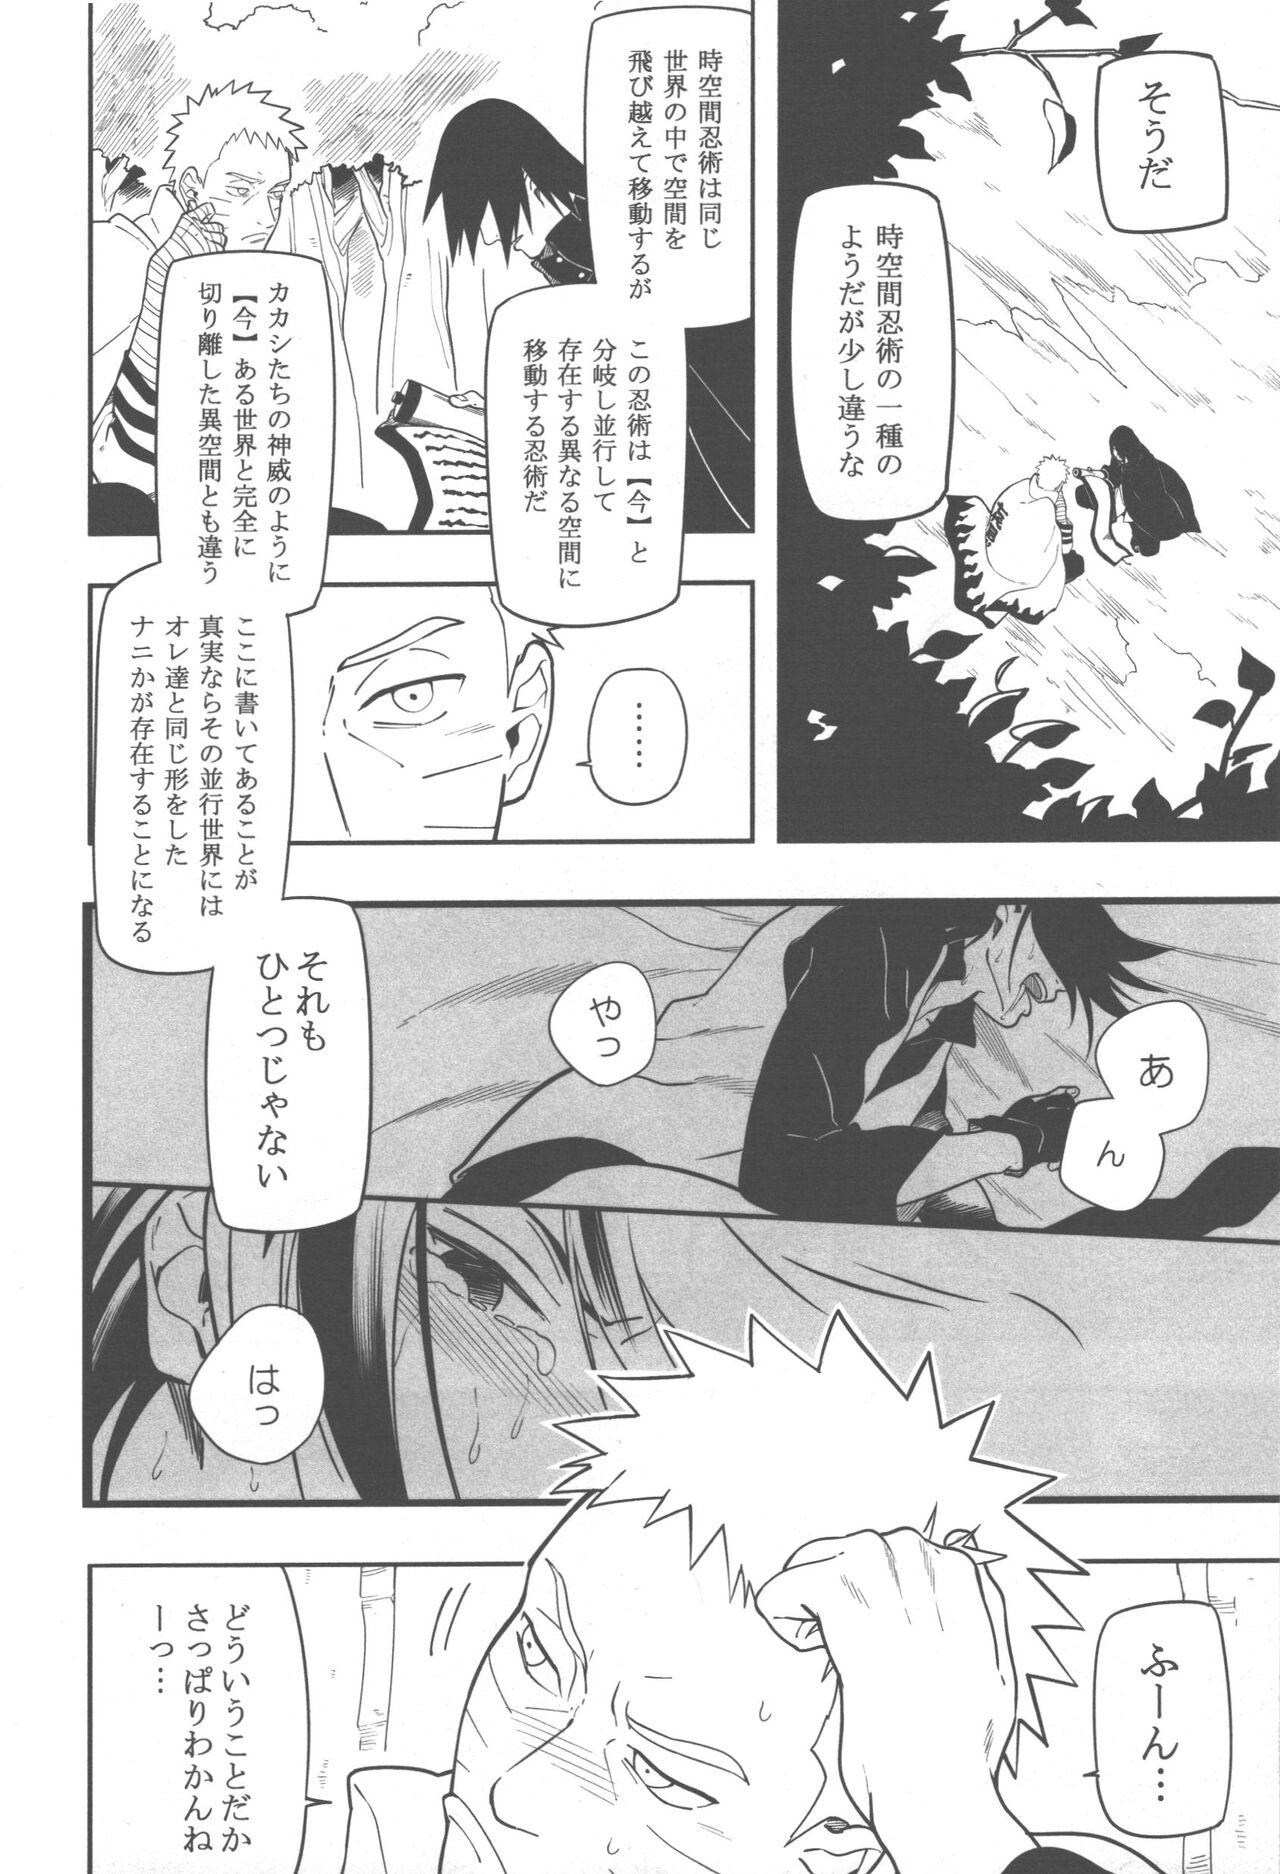 Peeing Midareru - Naruto Pee - Page 5